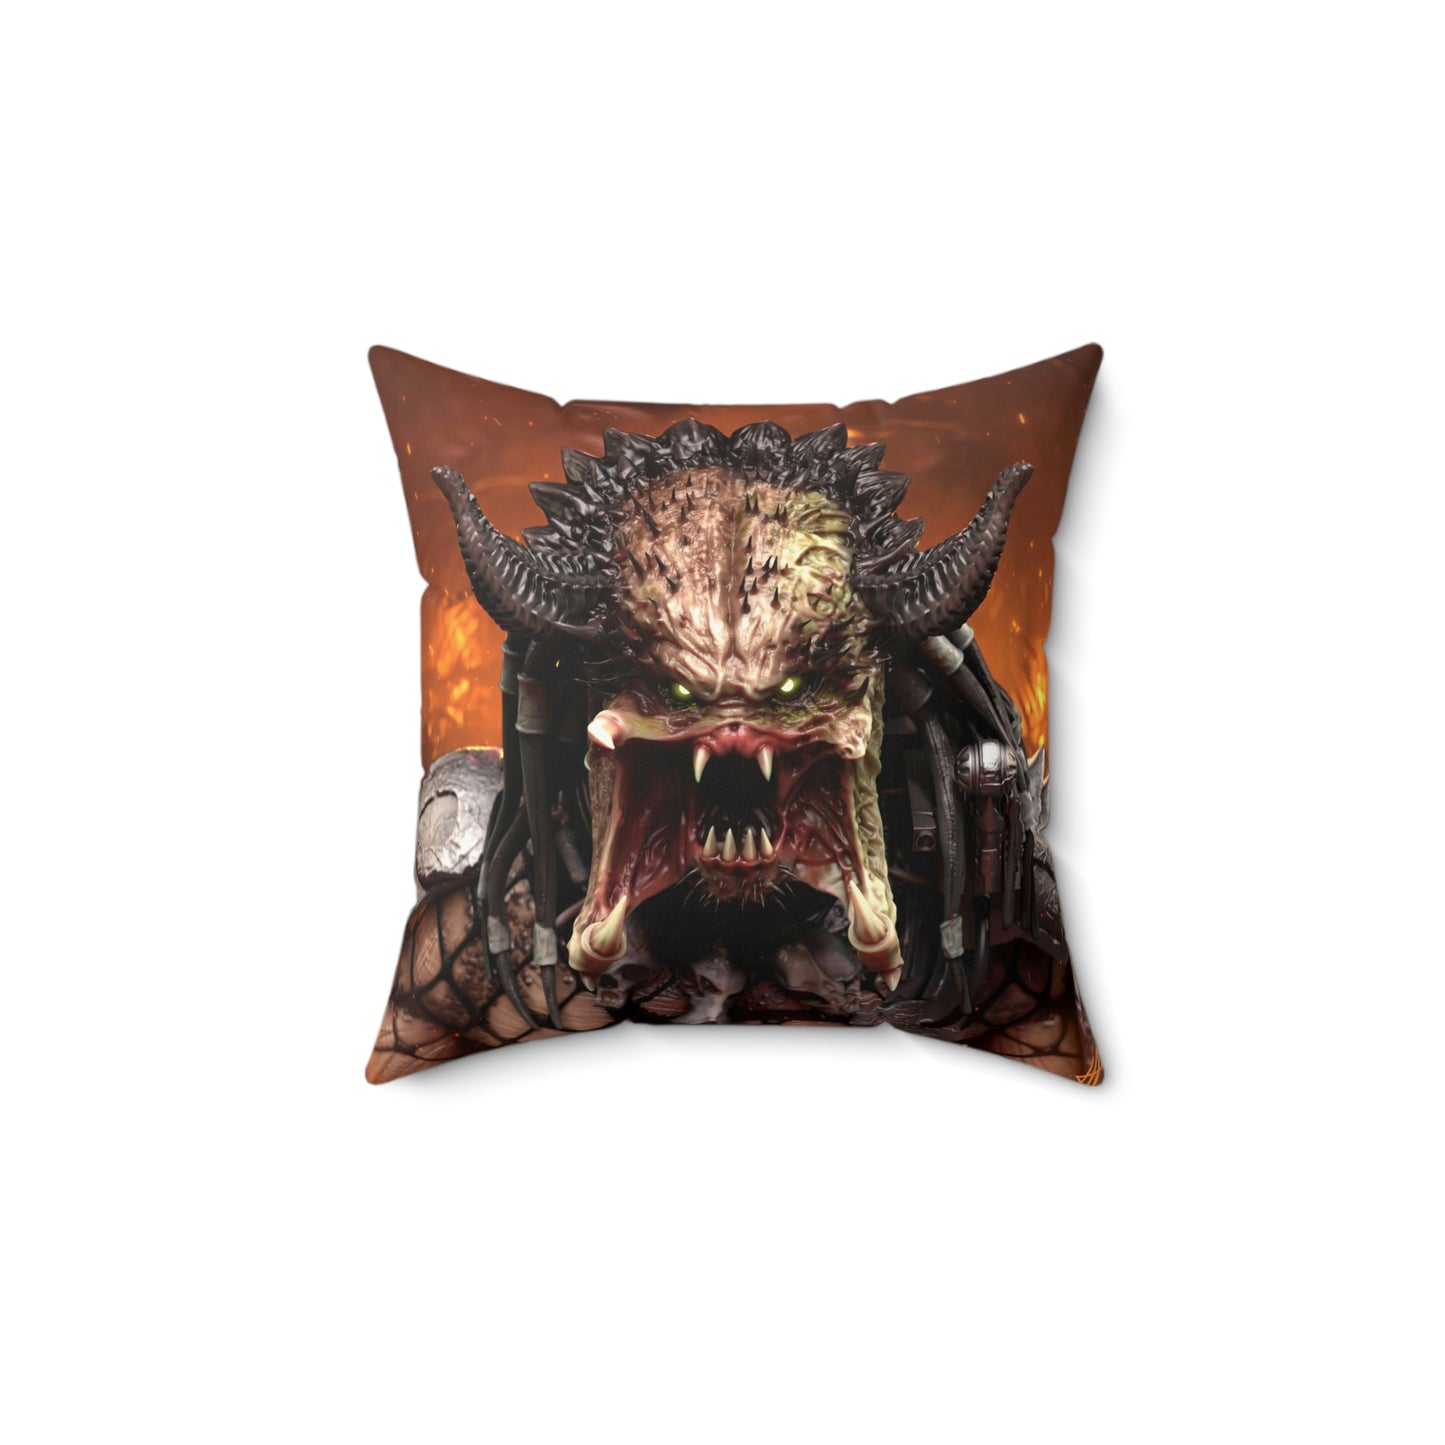 Predator Legendary Holder Spun Polyester Square Pillow